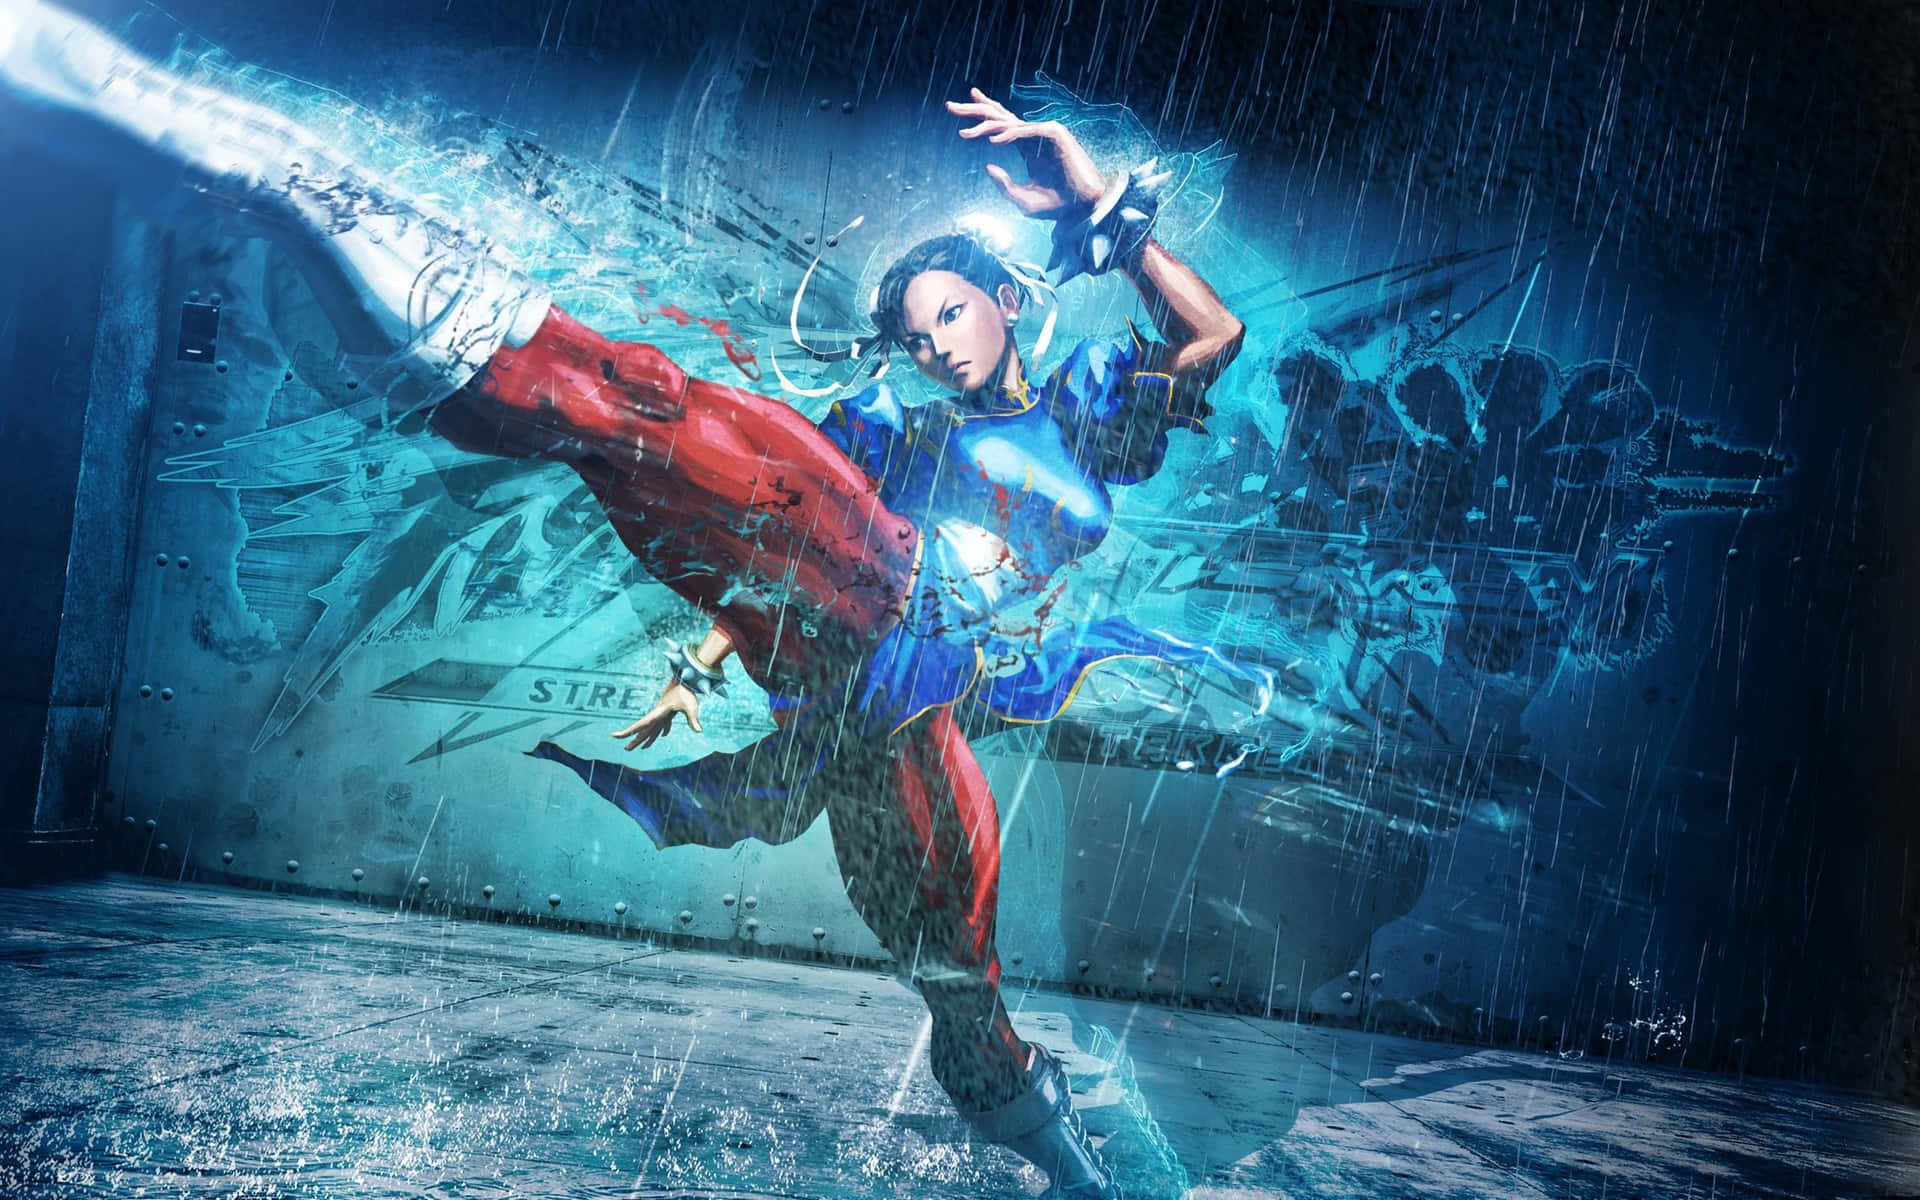 Streetfighter 4k Chun-li Lightning Kick Blir En Fantastisk Datorskärms- Eller Mobilbakgrund! Wallpaper